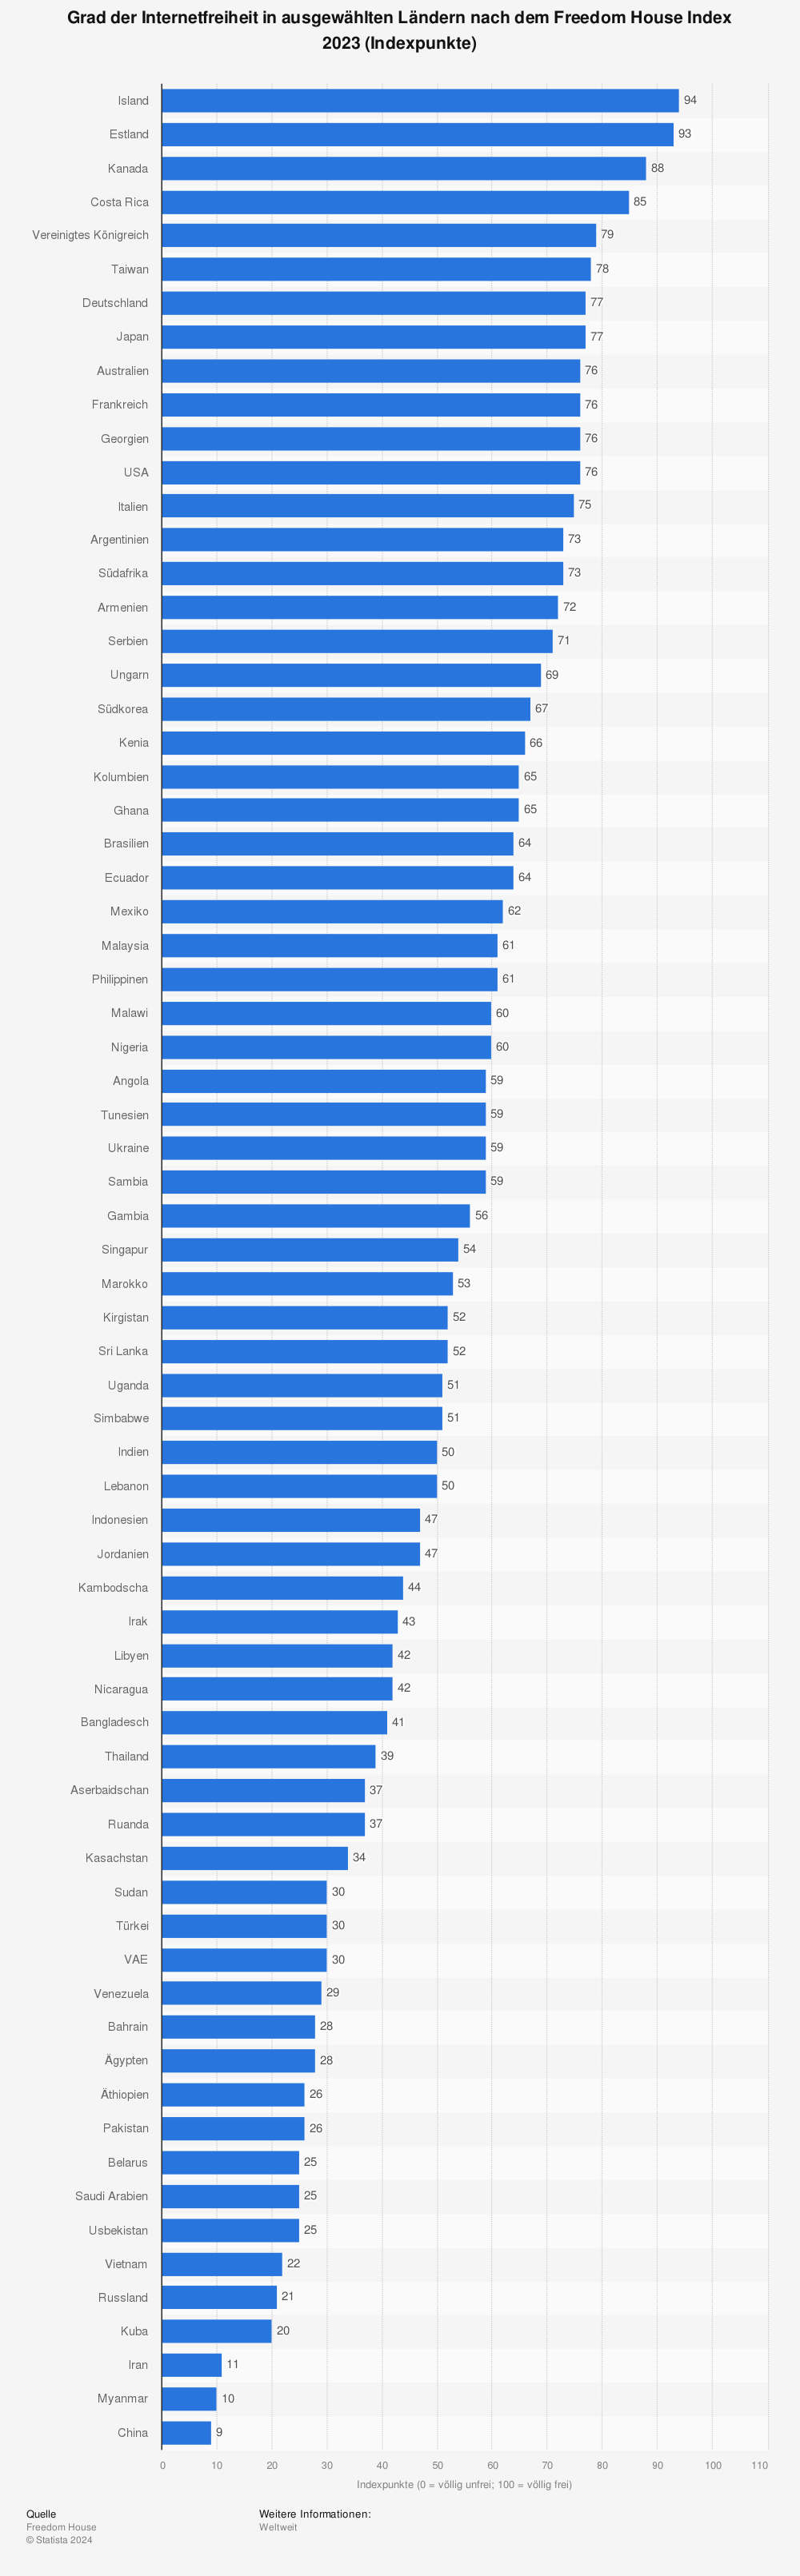 Statistik: Grad der Internetfreiheit in ausgewählten Ländern nach dem Freedom House Index 2023 (Indexpunkte) | Statista